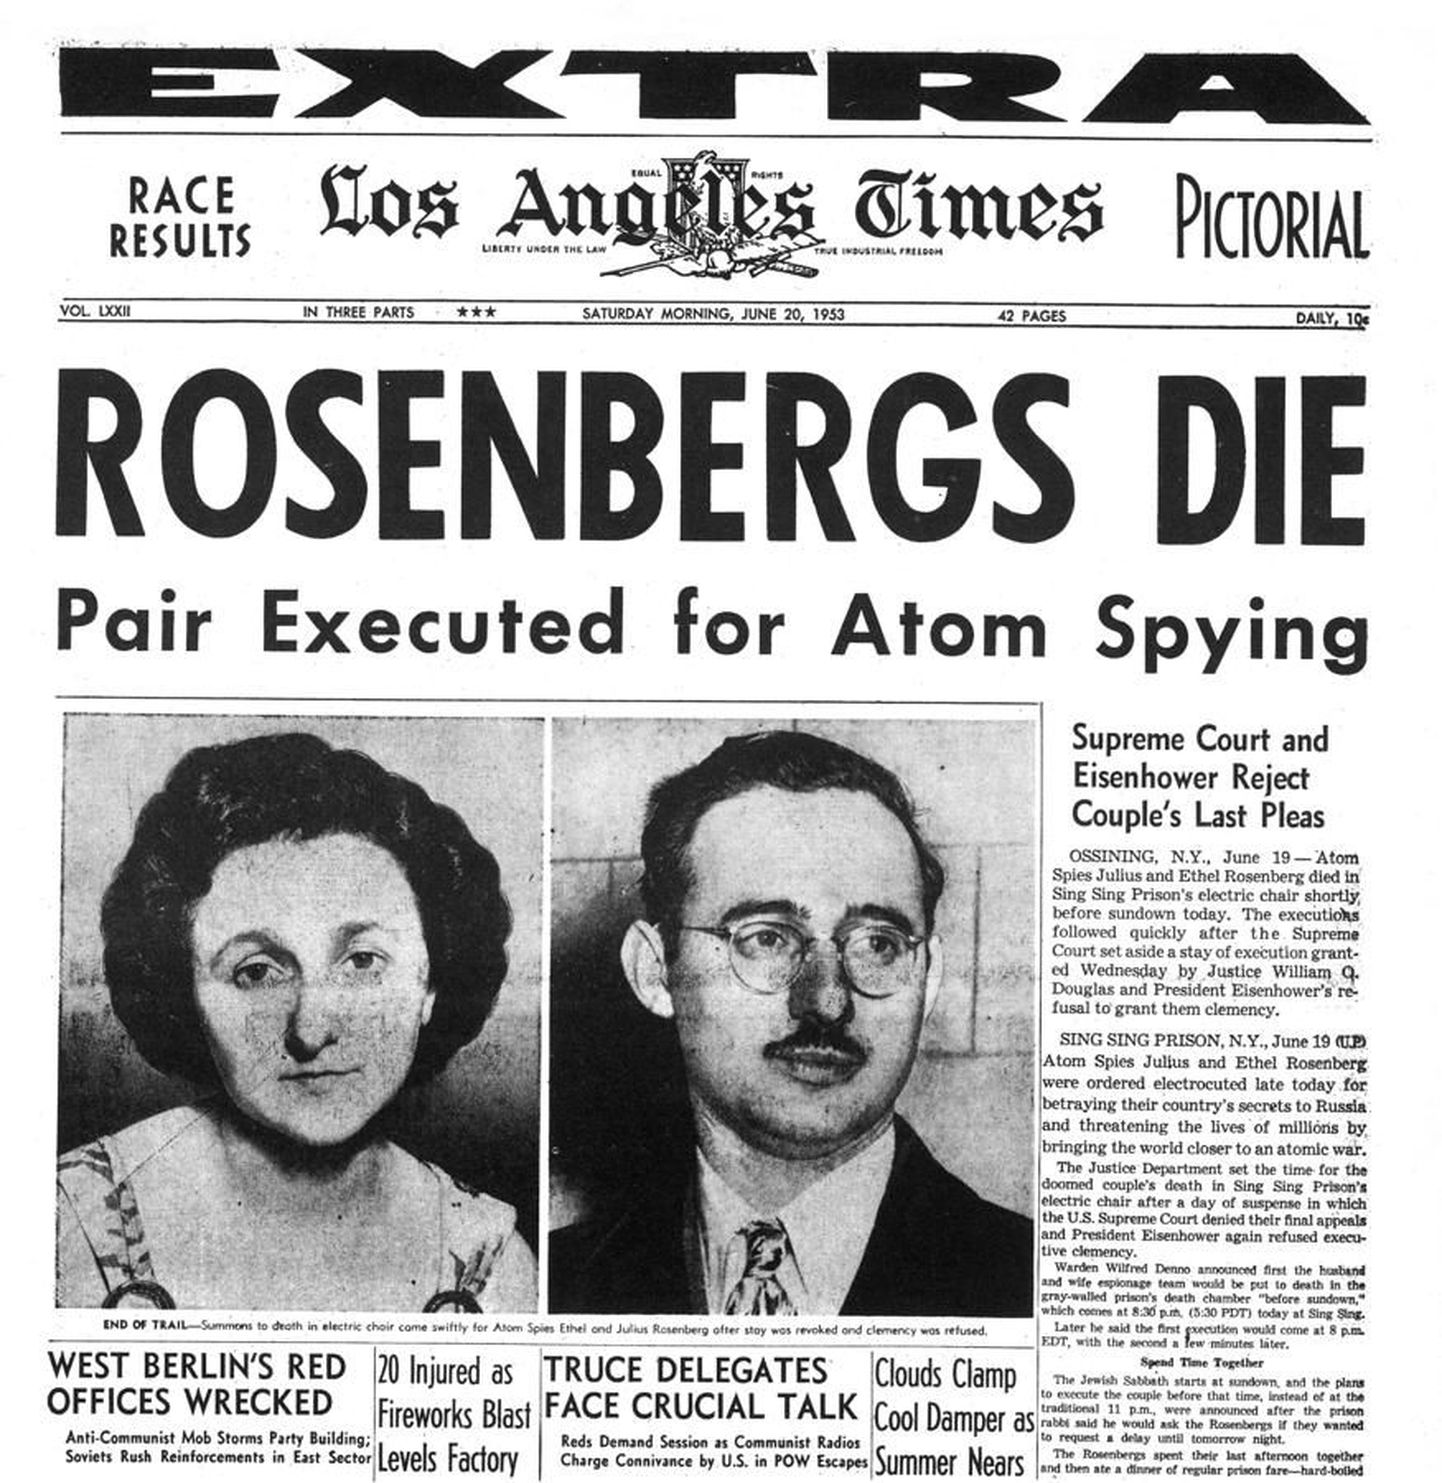 Известие о казни Розенбергов газеты всего мира поместили на первые полосы.